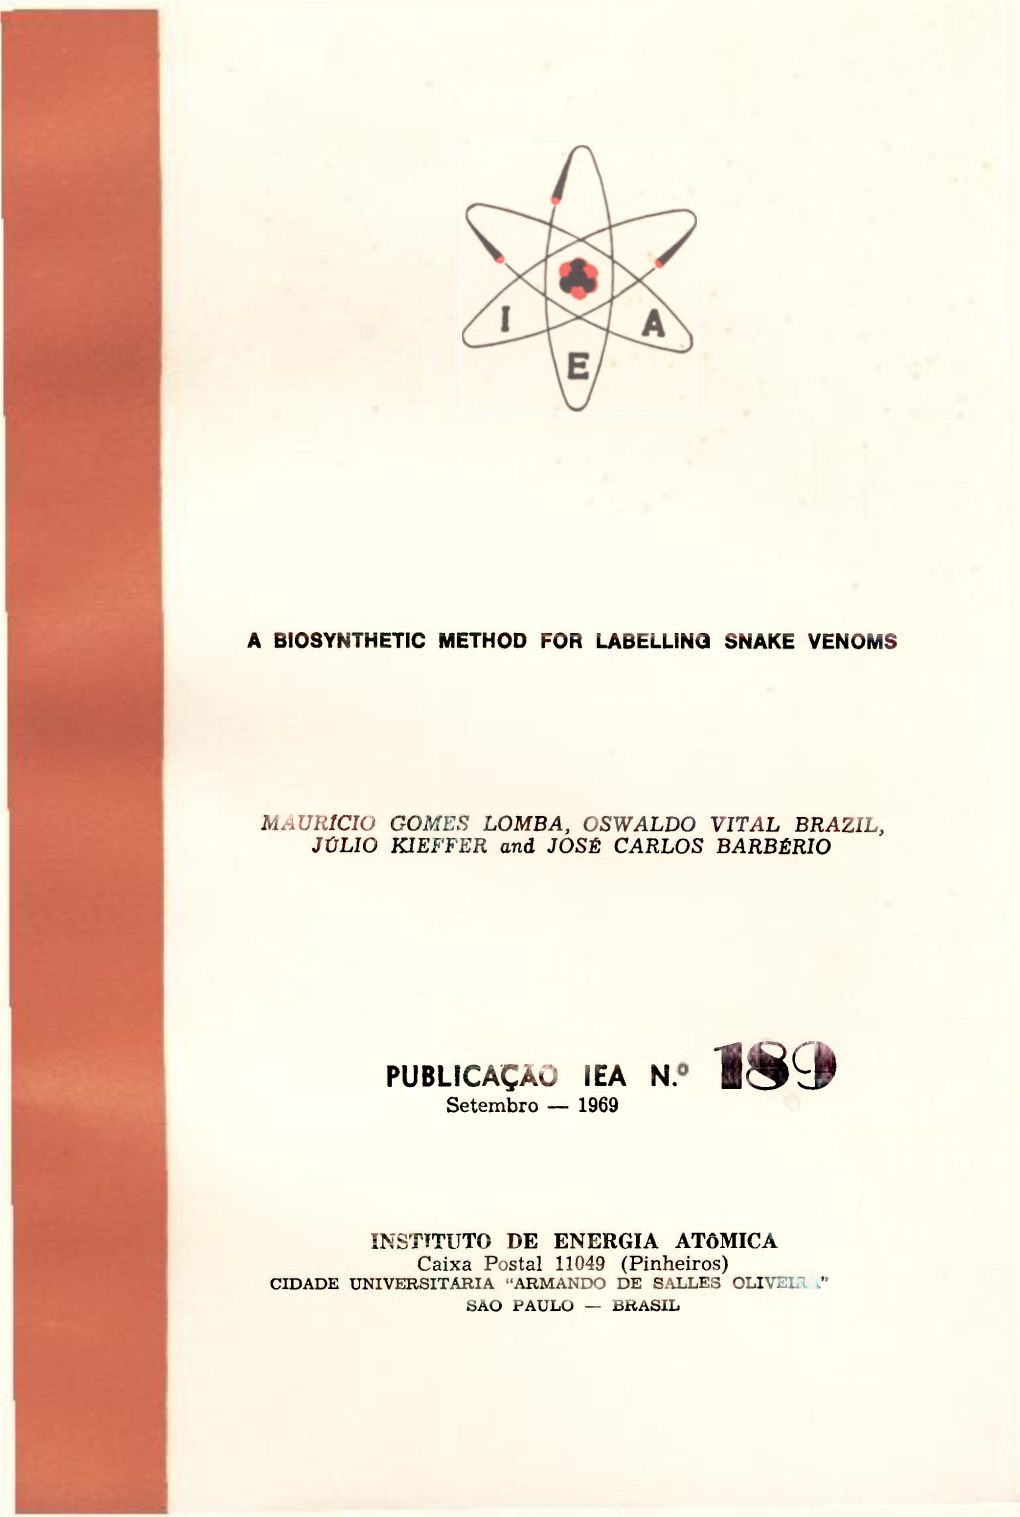 PUBLICAÇÃO IEA N. 189 Setembro — 1969